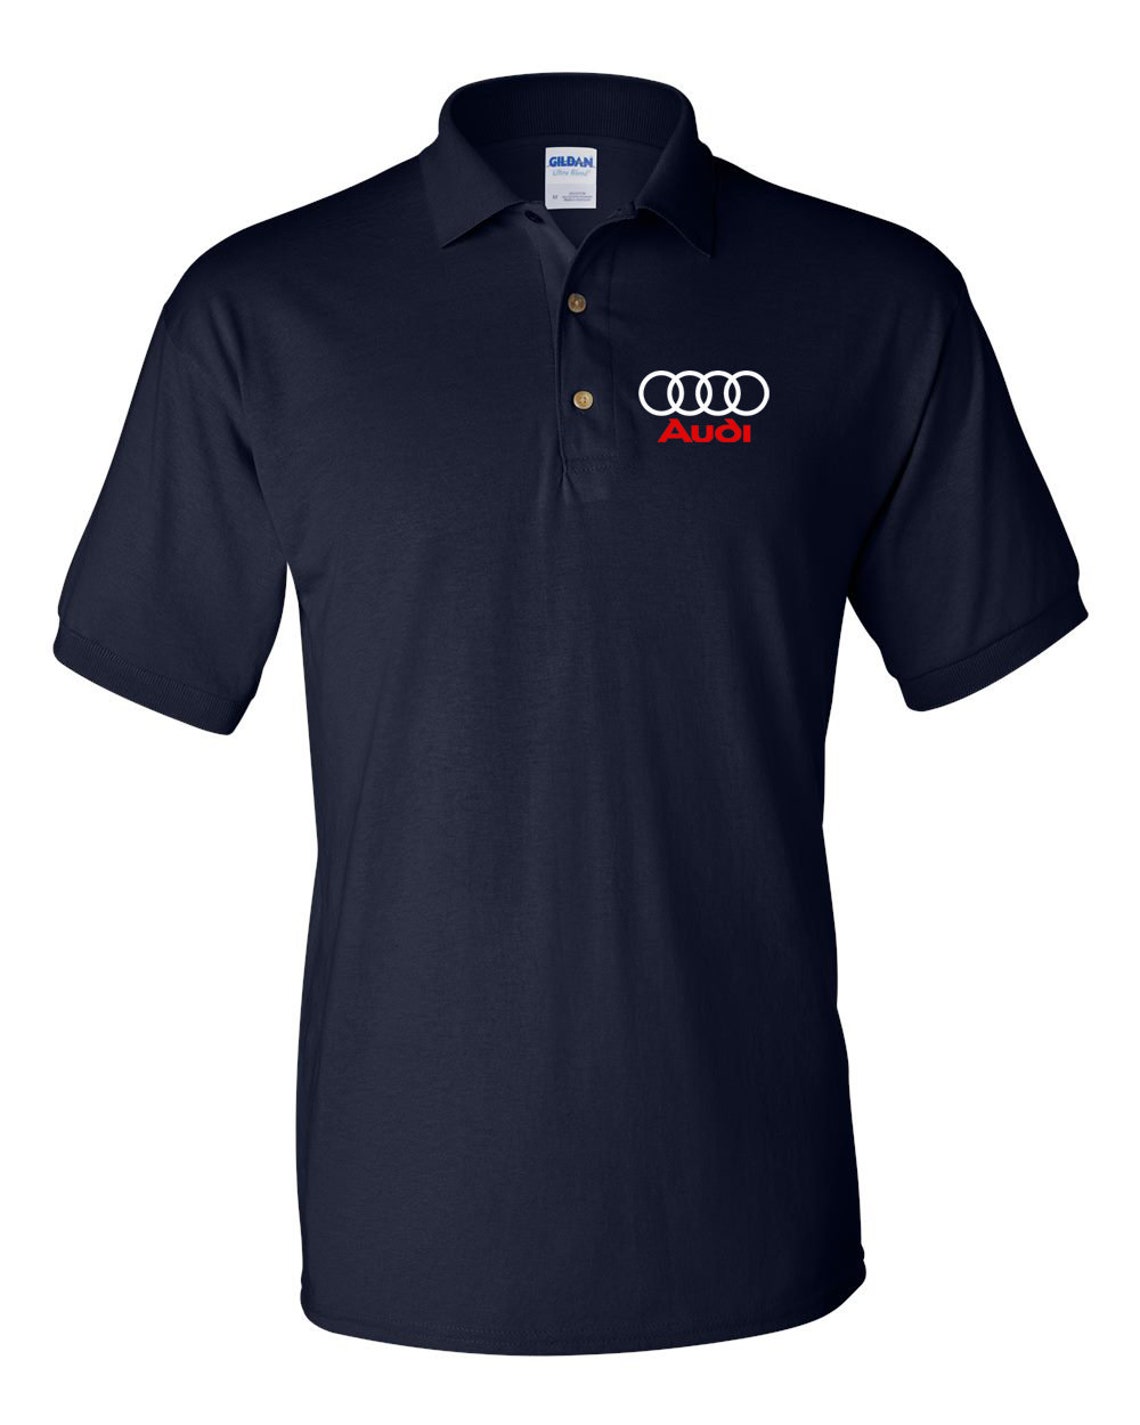 Audi Shirt Audi T-Shirt Audi Men's Polo Shirt | Etsy